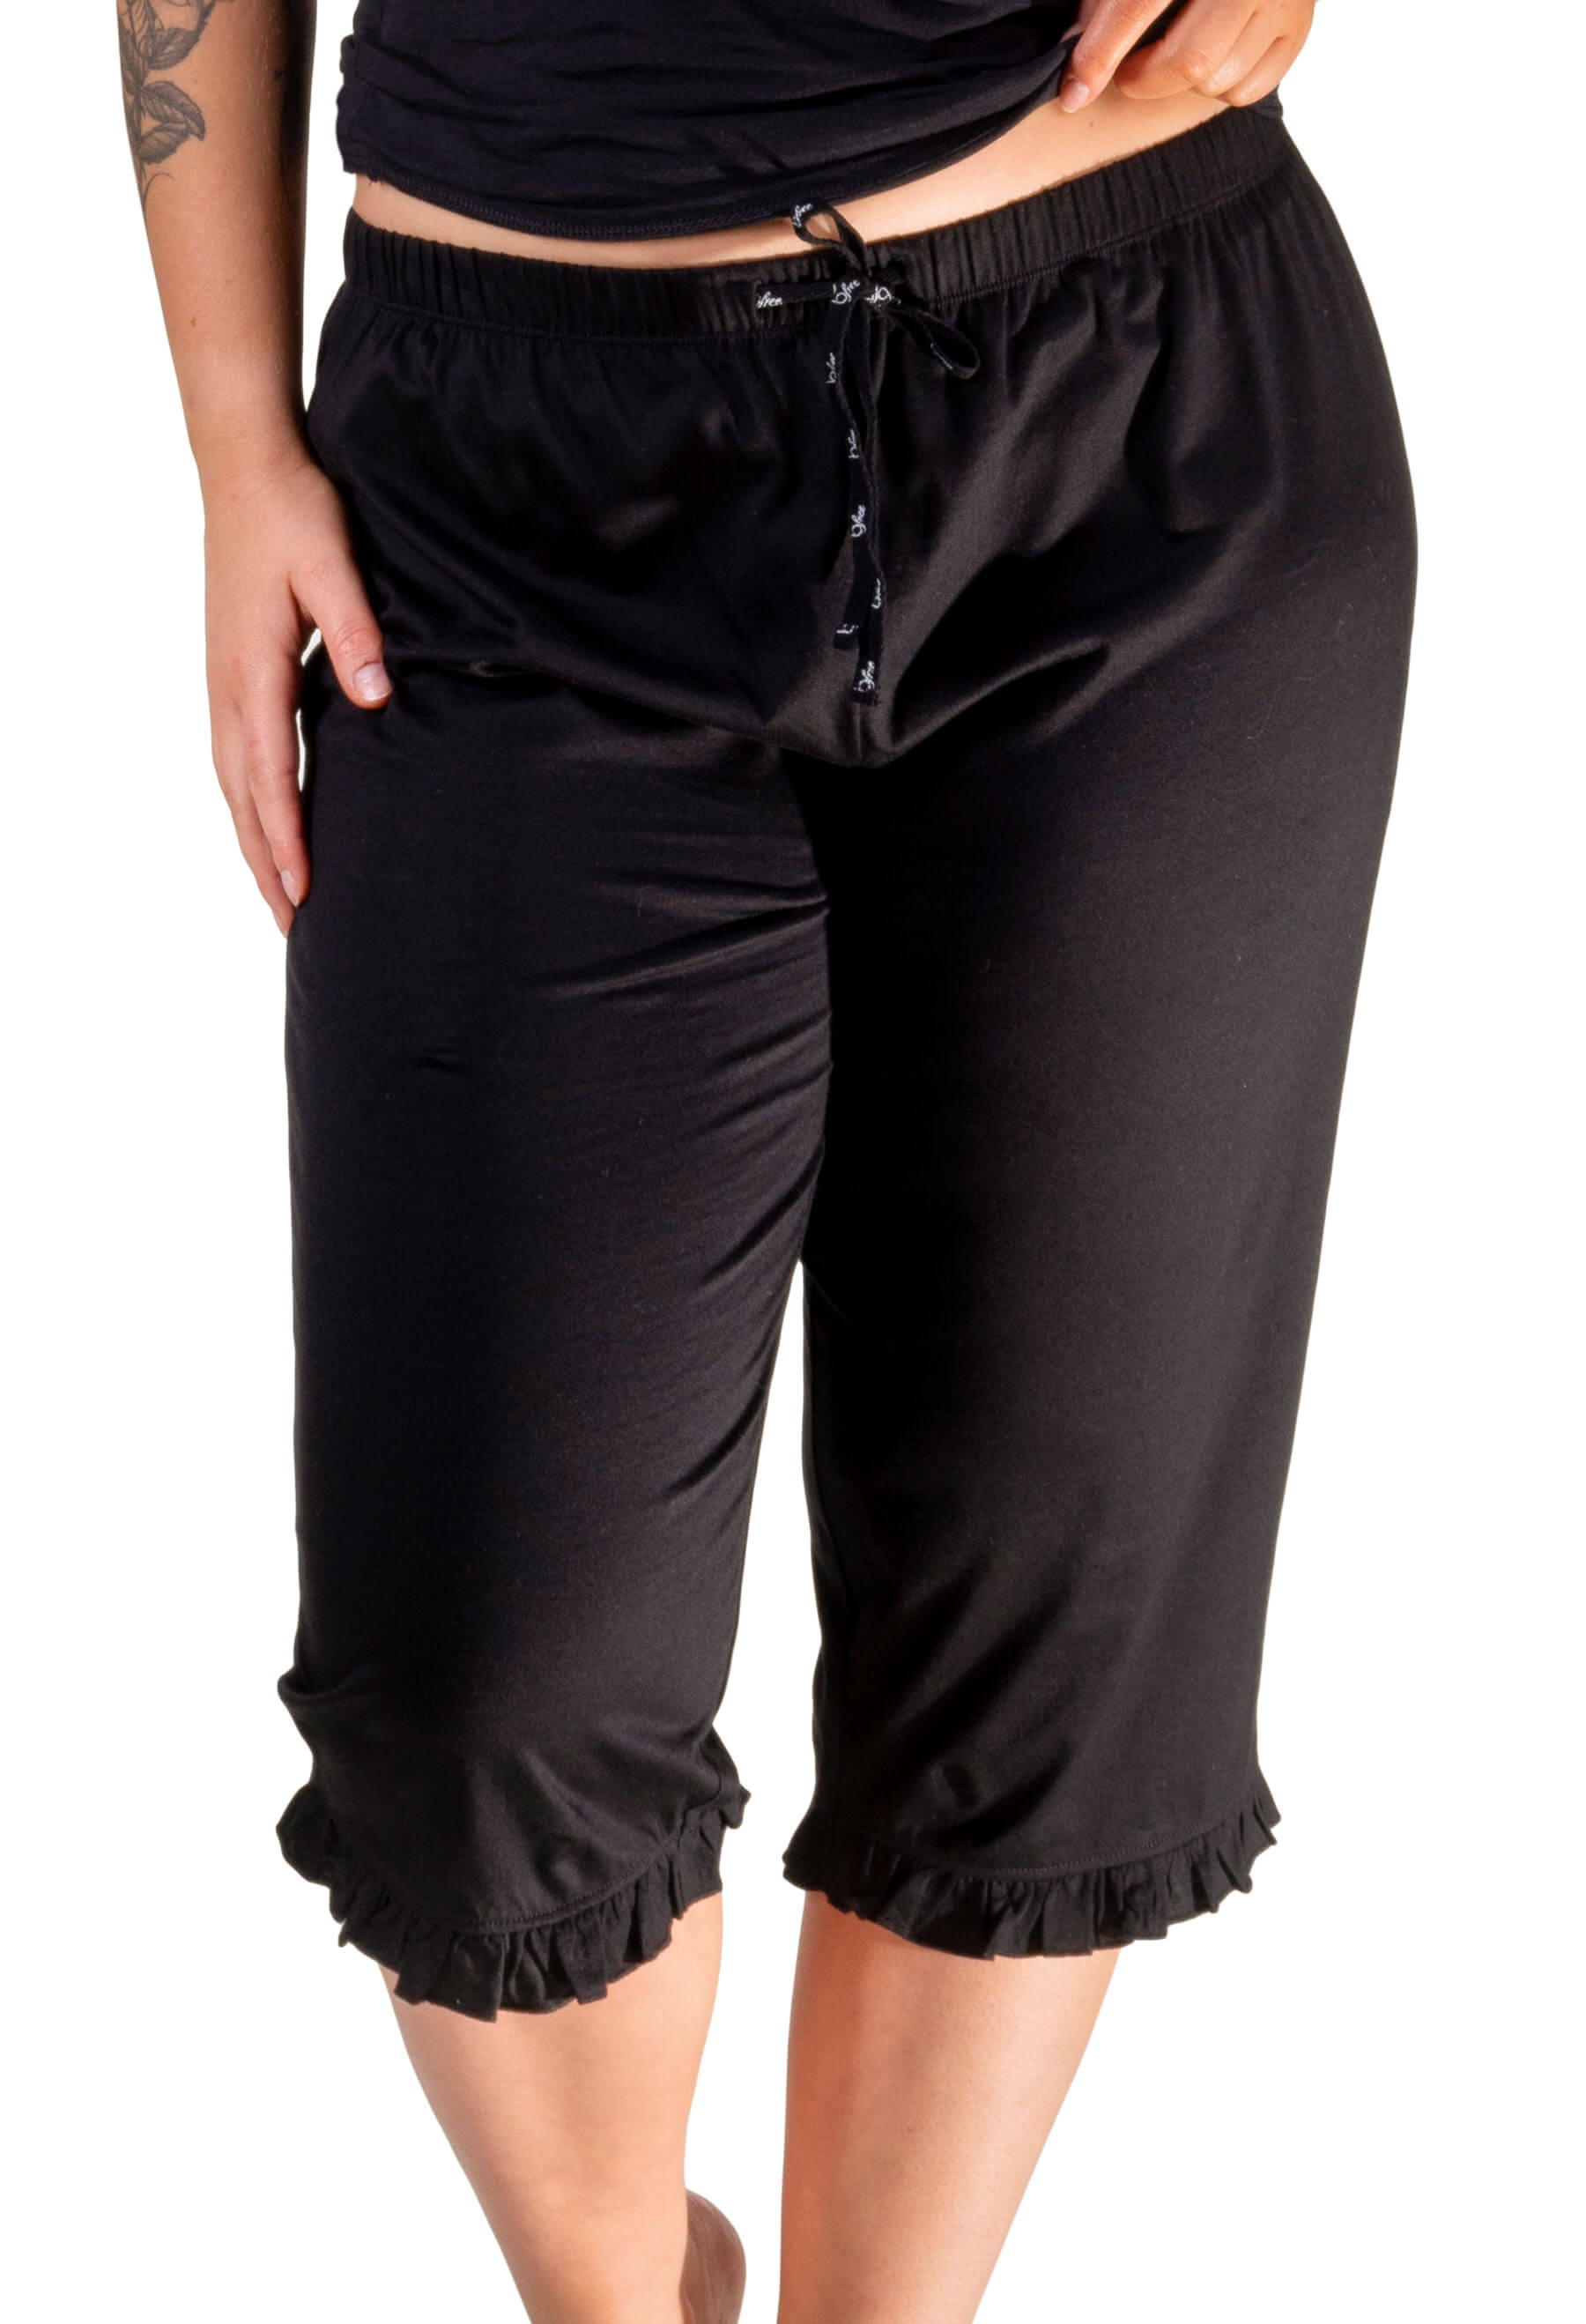 Buy Club A9 Women's Regular Fit Capri, 3/4 Pants, Lounge Capri Pants (Pack  of 2) at Amazon.in